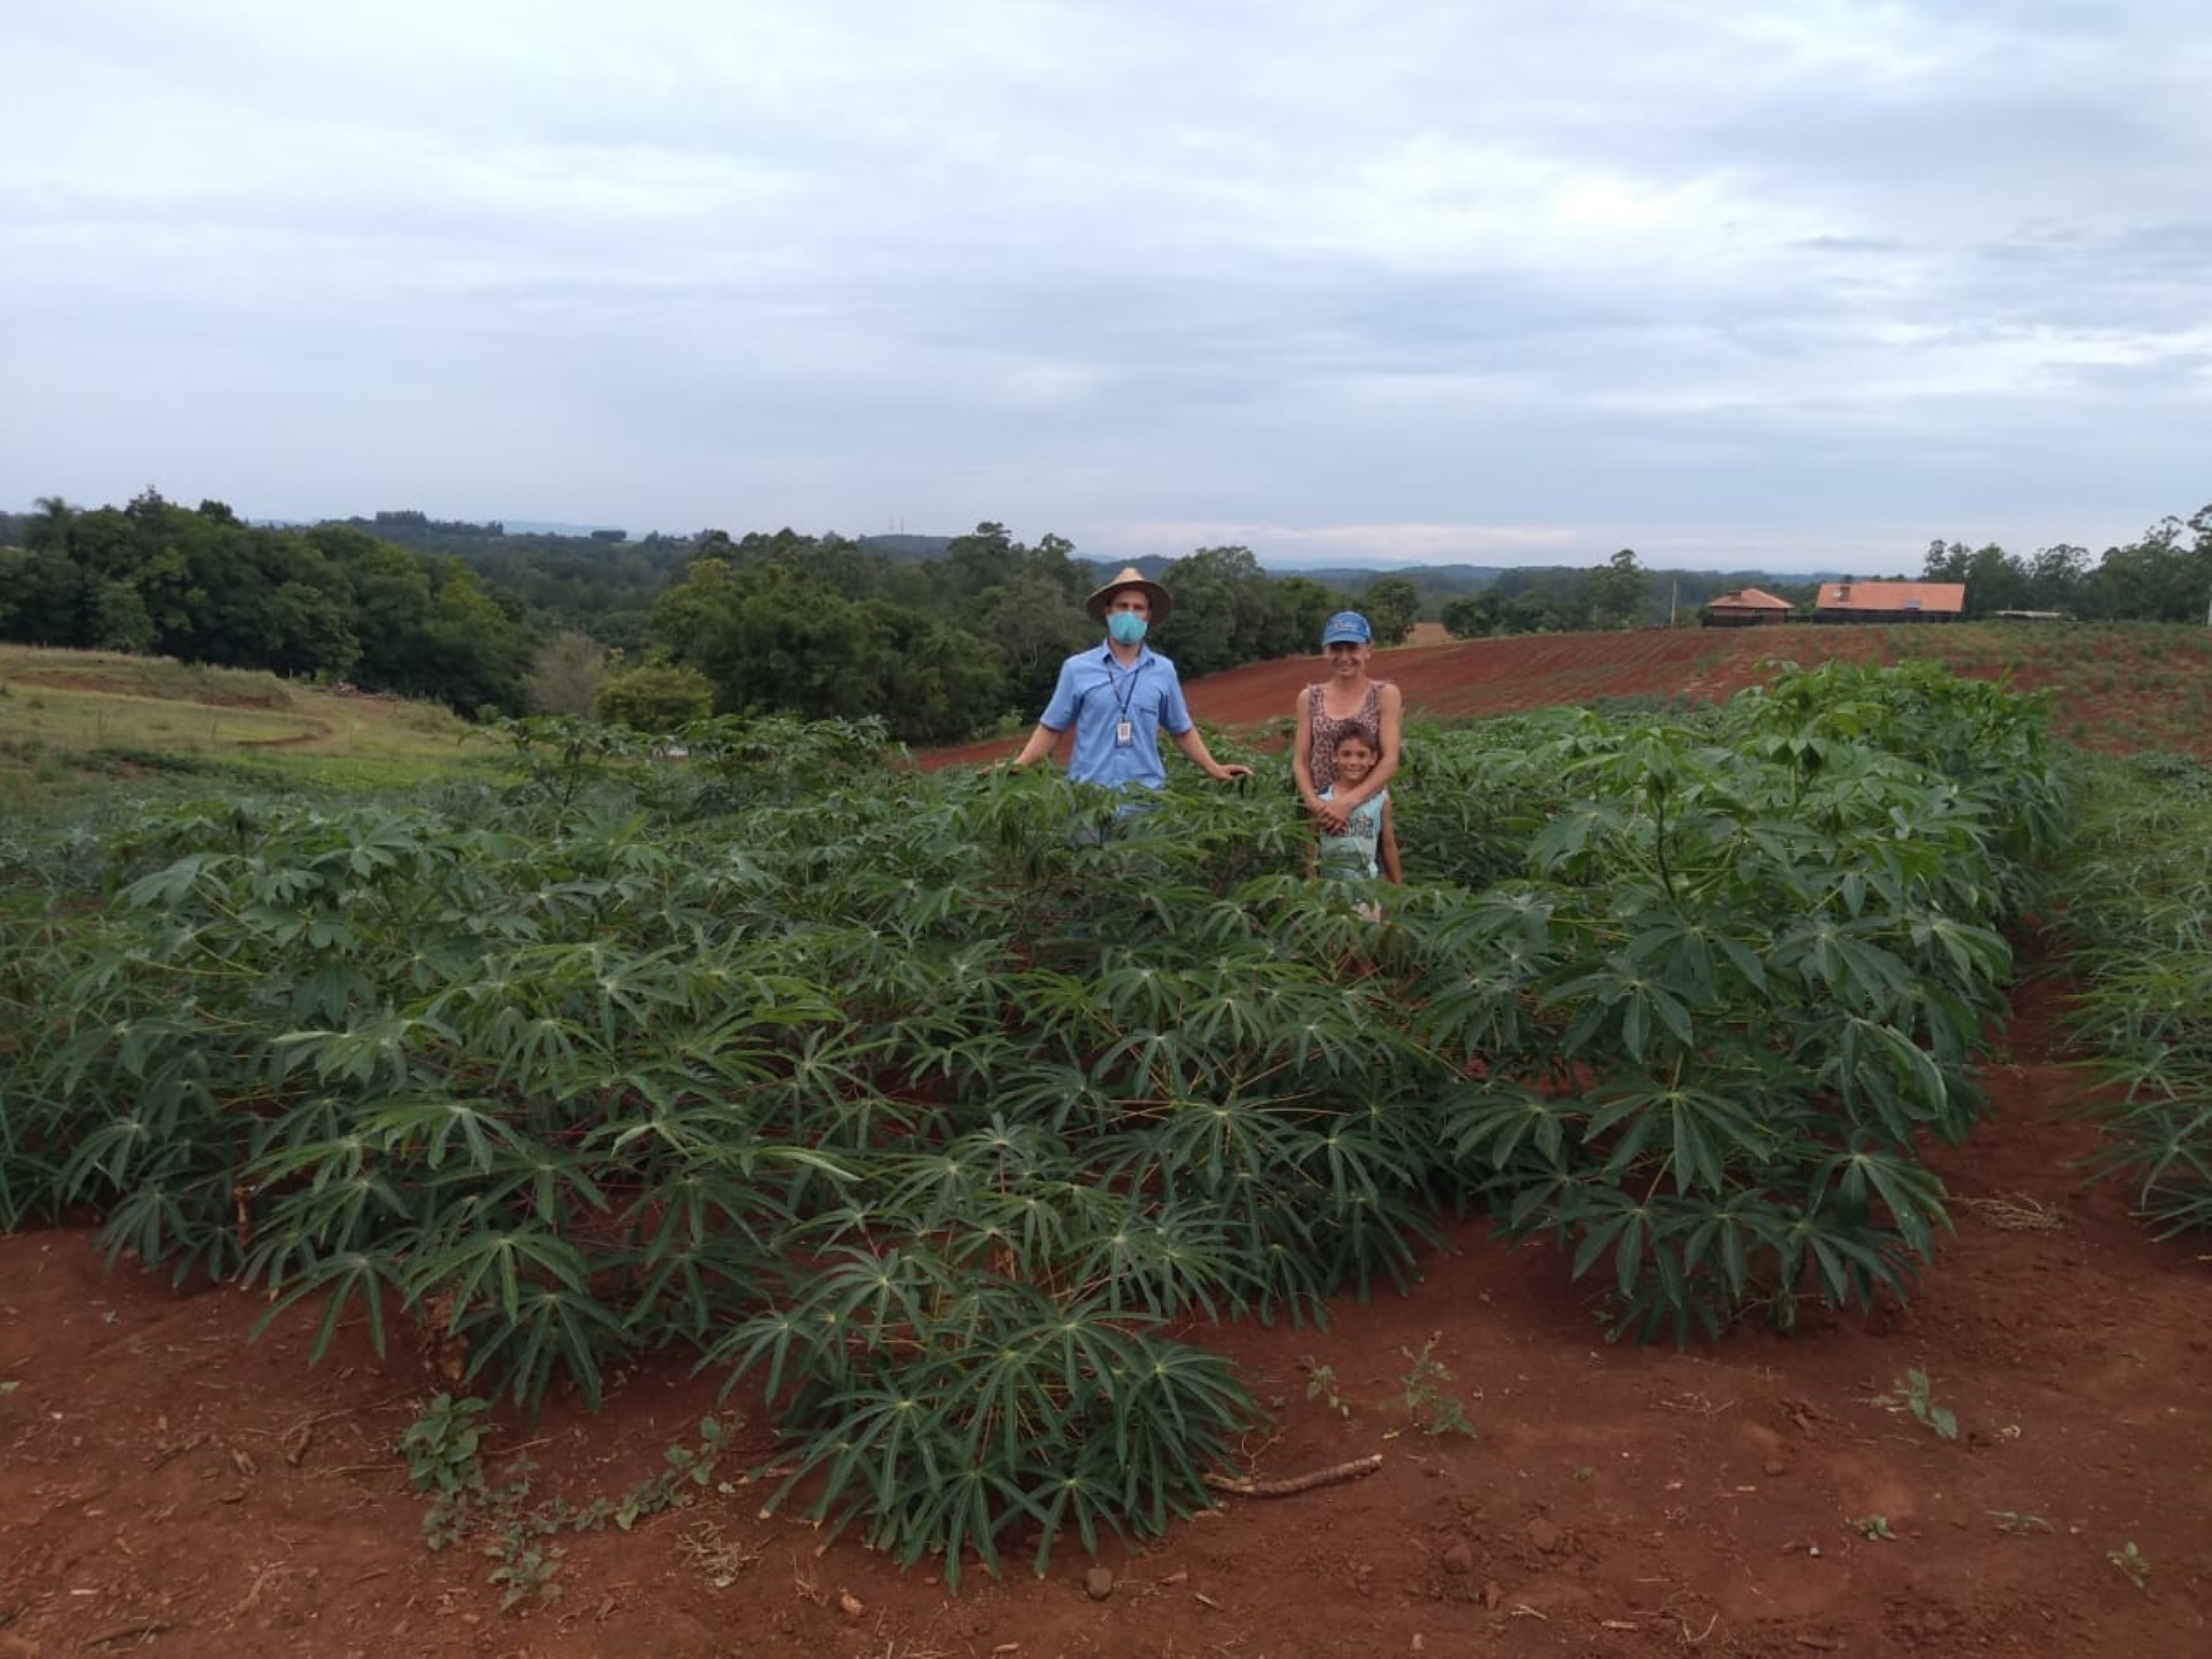 A família Olbermann, de Cruzeiro do Sul, participou na noite de quinta-feira (29/07) de um evento virtual sobre novas cultivares de aipim. Organizada pela Emater/RS-Ascar-Foto divulgação: Emater/RS